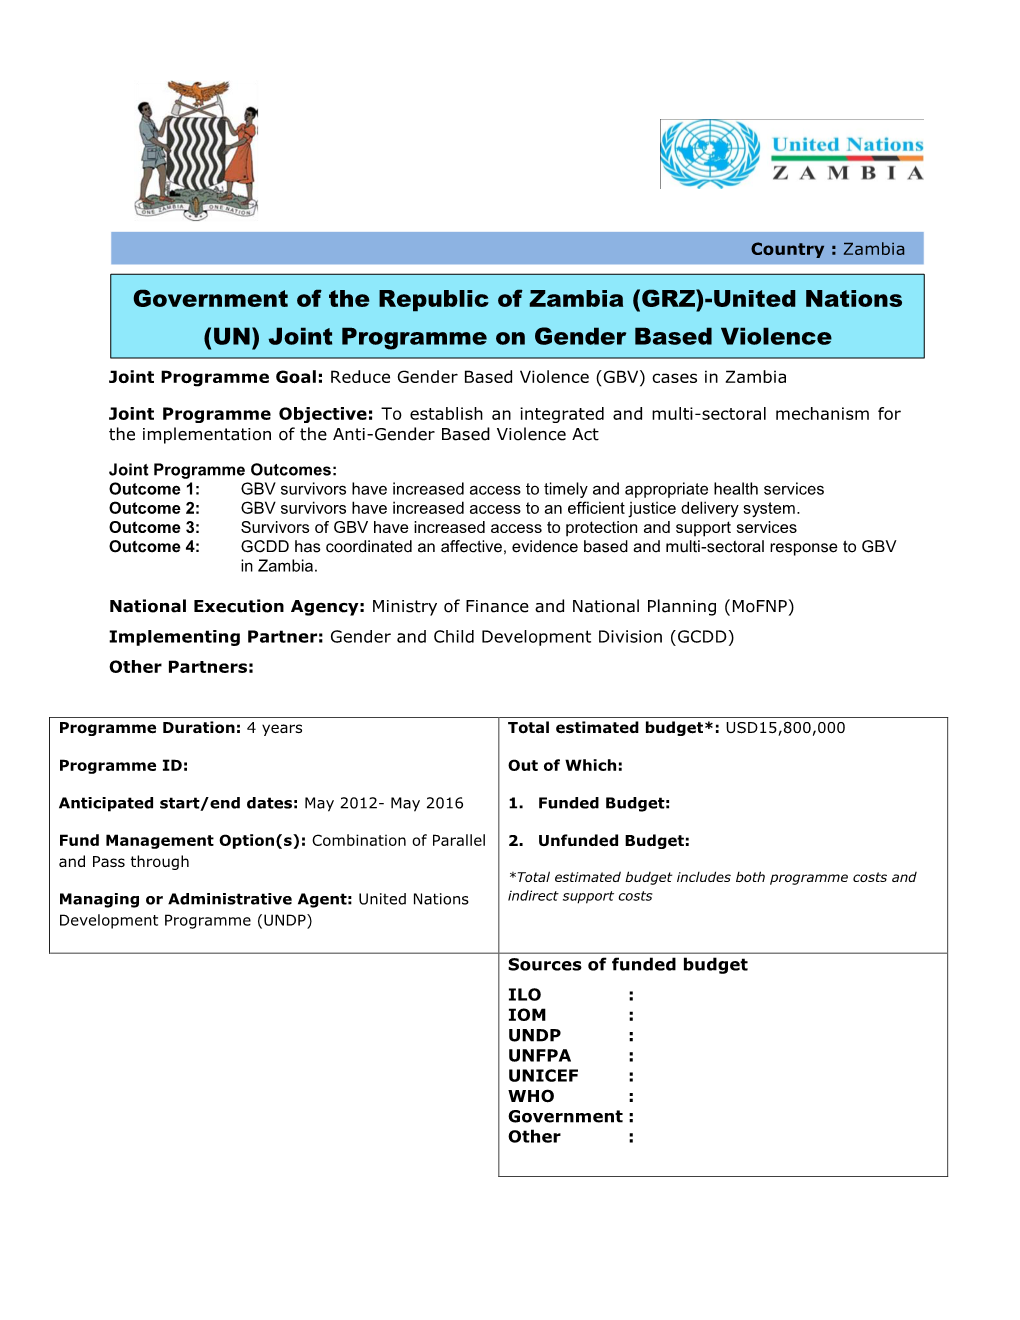 Joint Programme on Gender Based Violence